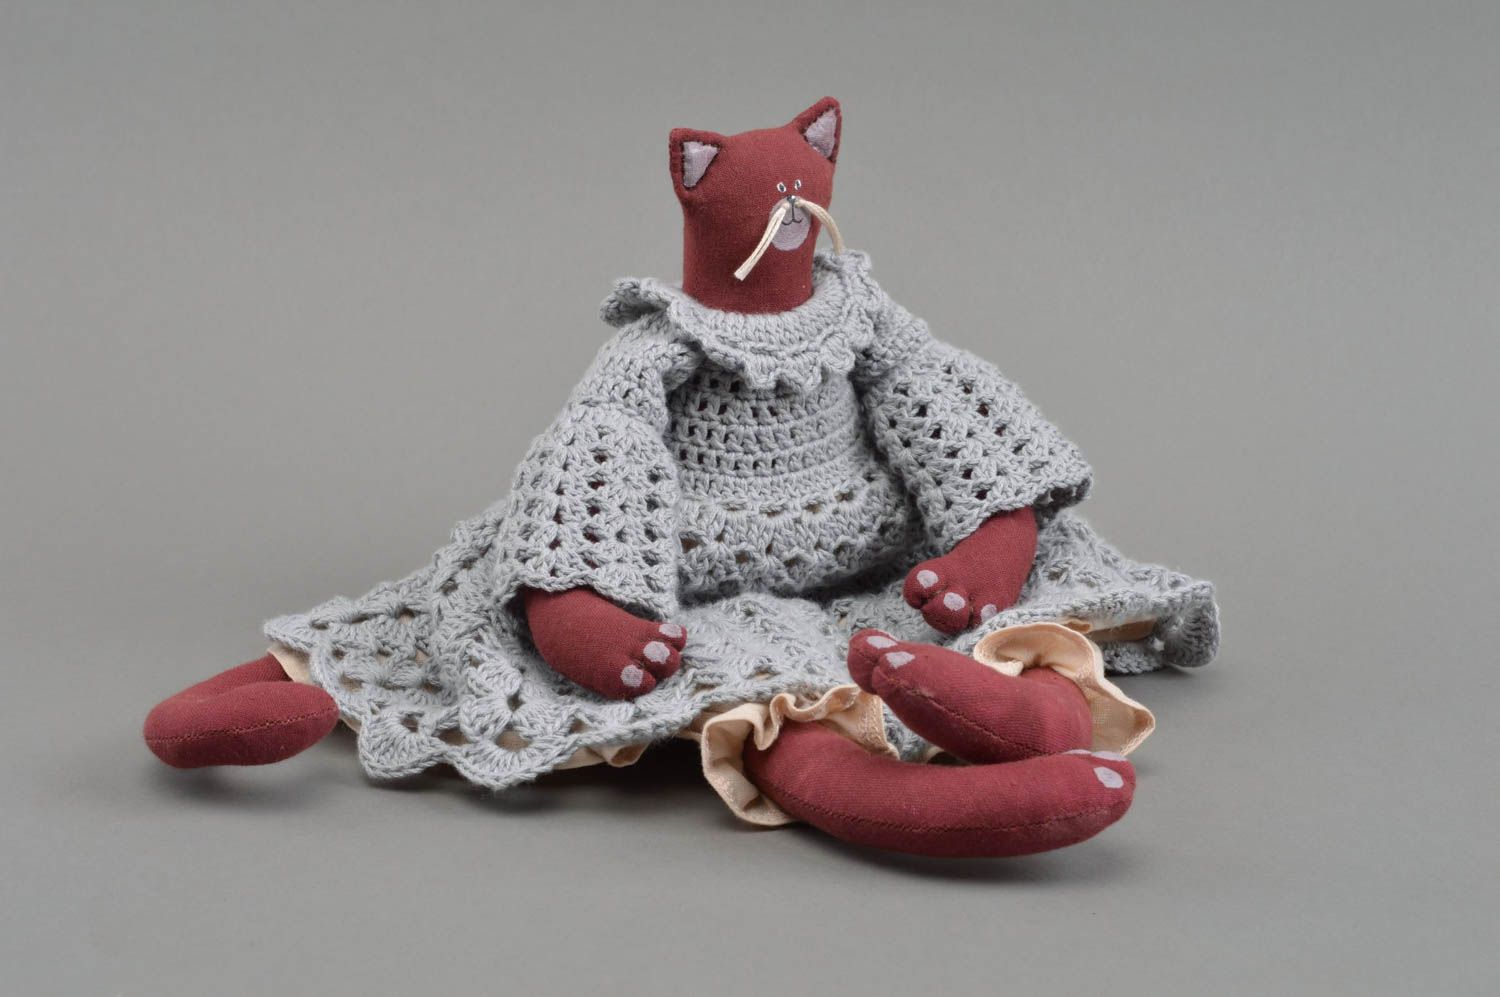 Textil Kuscheltier Katze rot im gehäkelten Kleid handmade schön originell foto 4